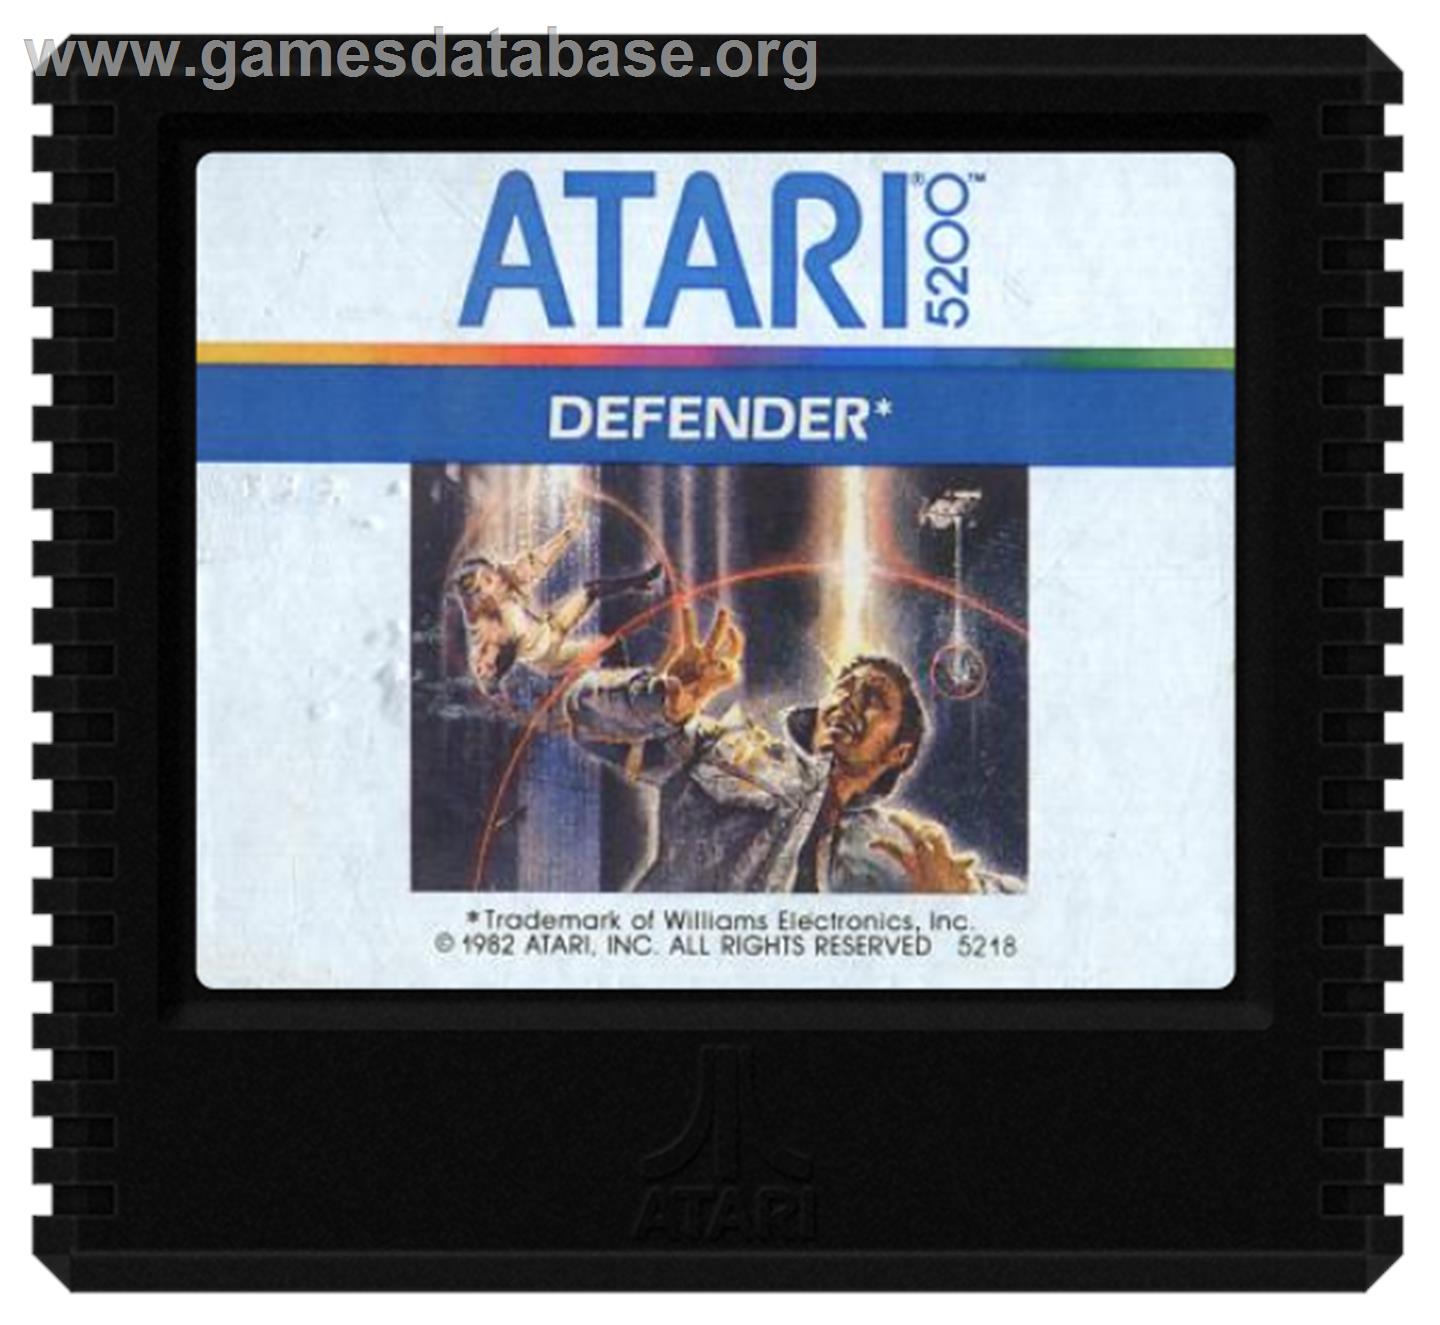 Defender - Atari 5200 - Artwork - Cartridge